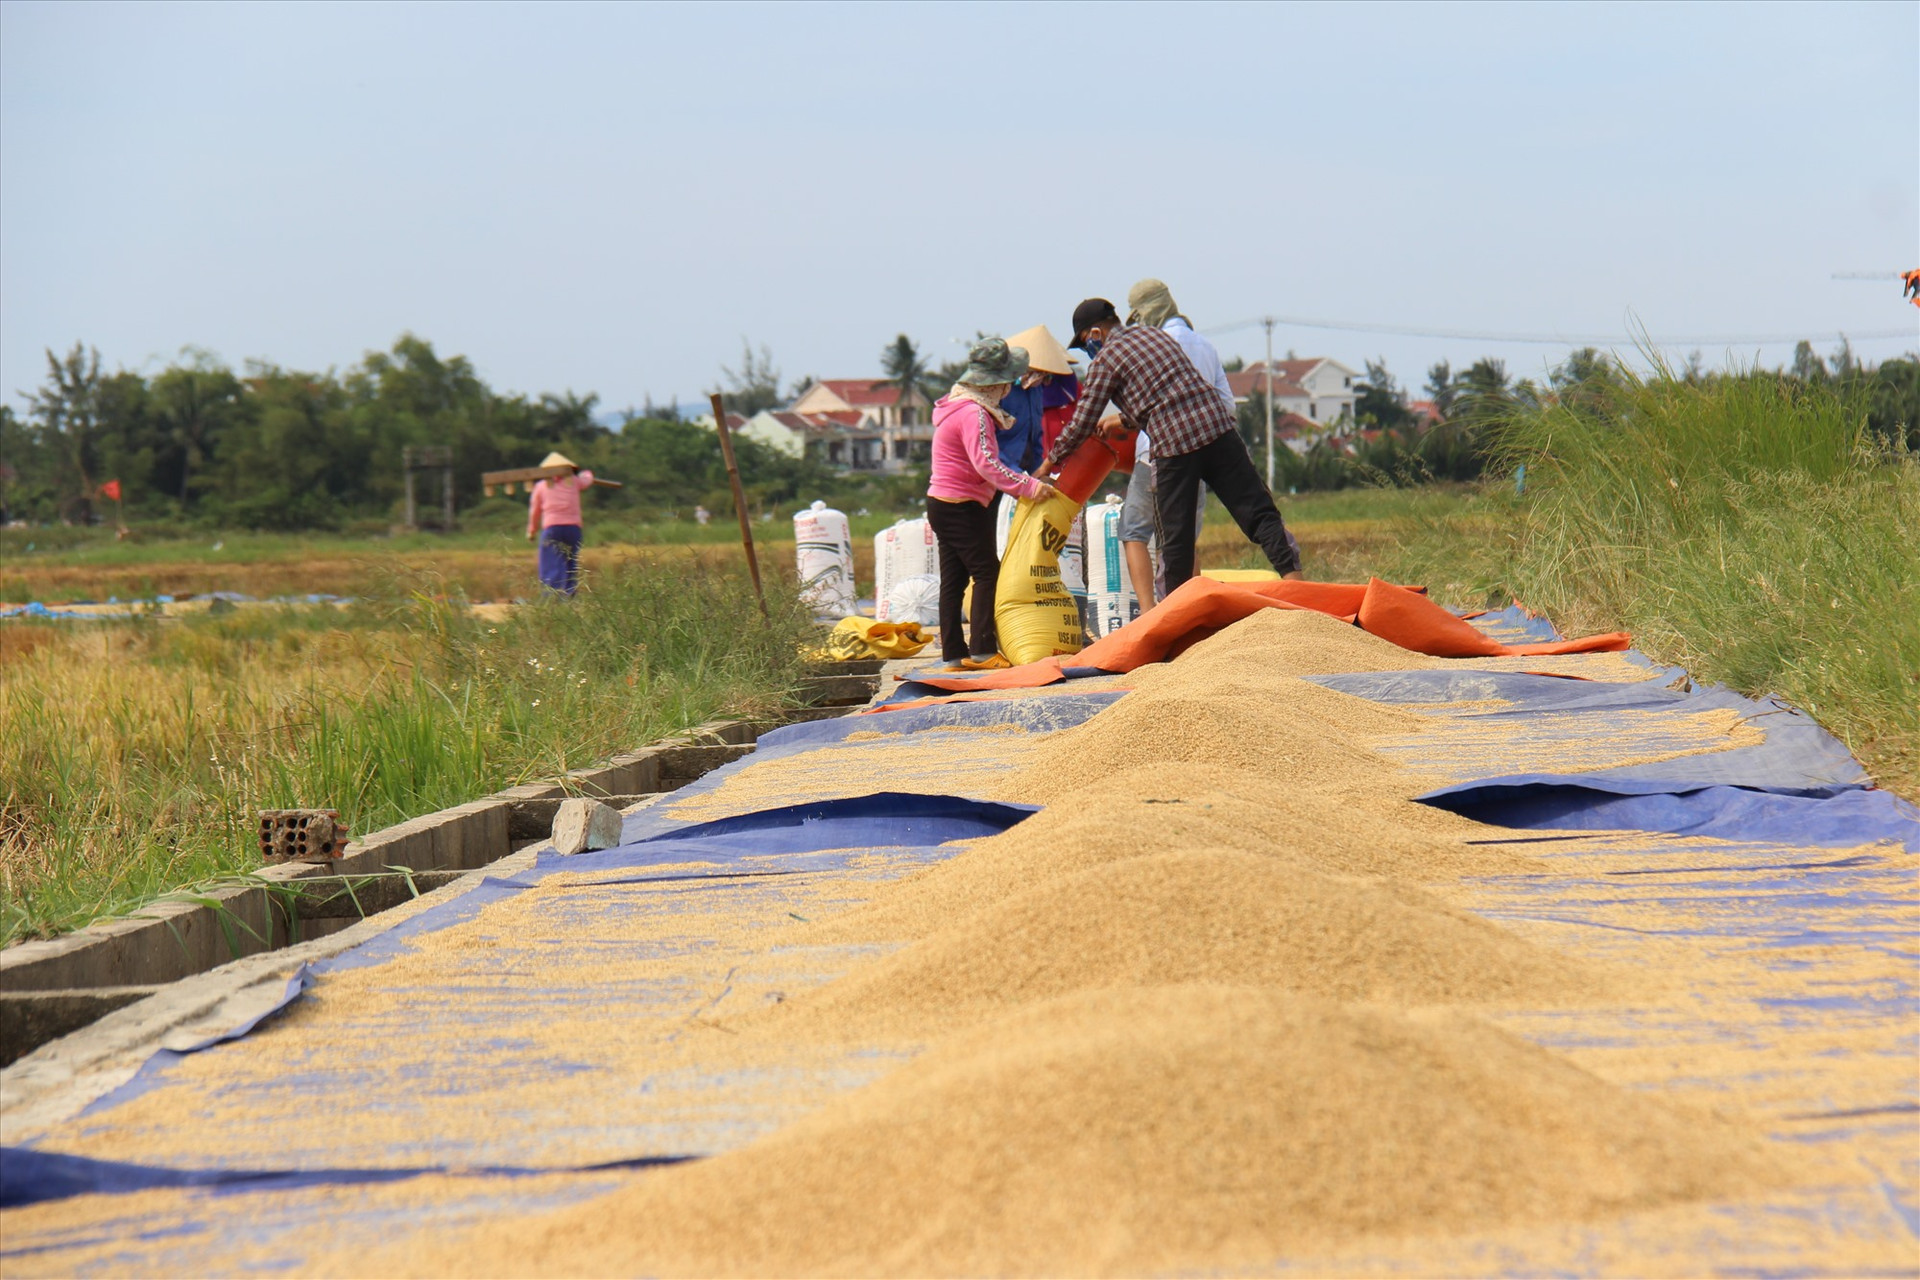 Tranh thủ thời tiết nắng trước bão, người dân phường Cẩm Châu, thành phố Hội An phơi lúa cho khô. Ảnh: THANH THẮNG